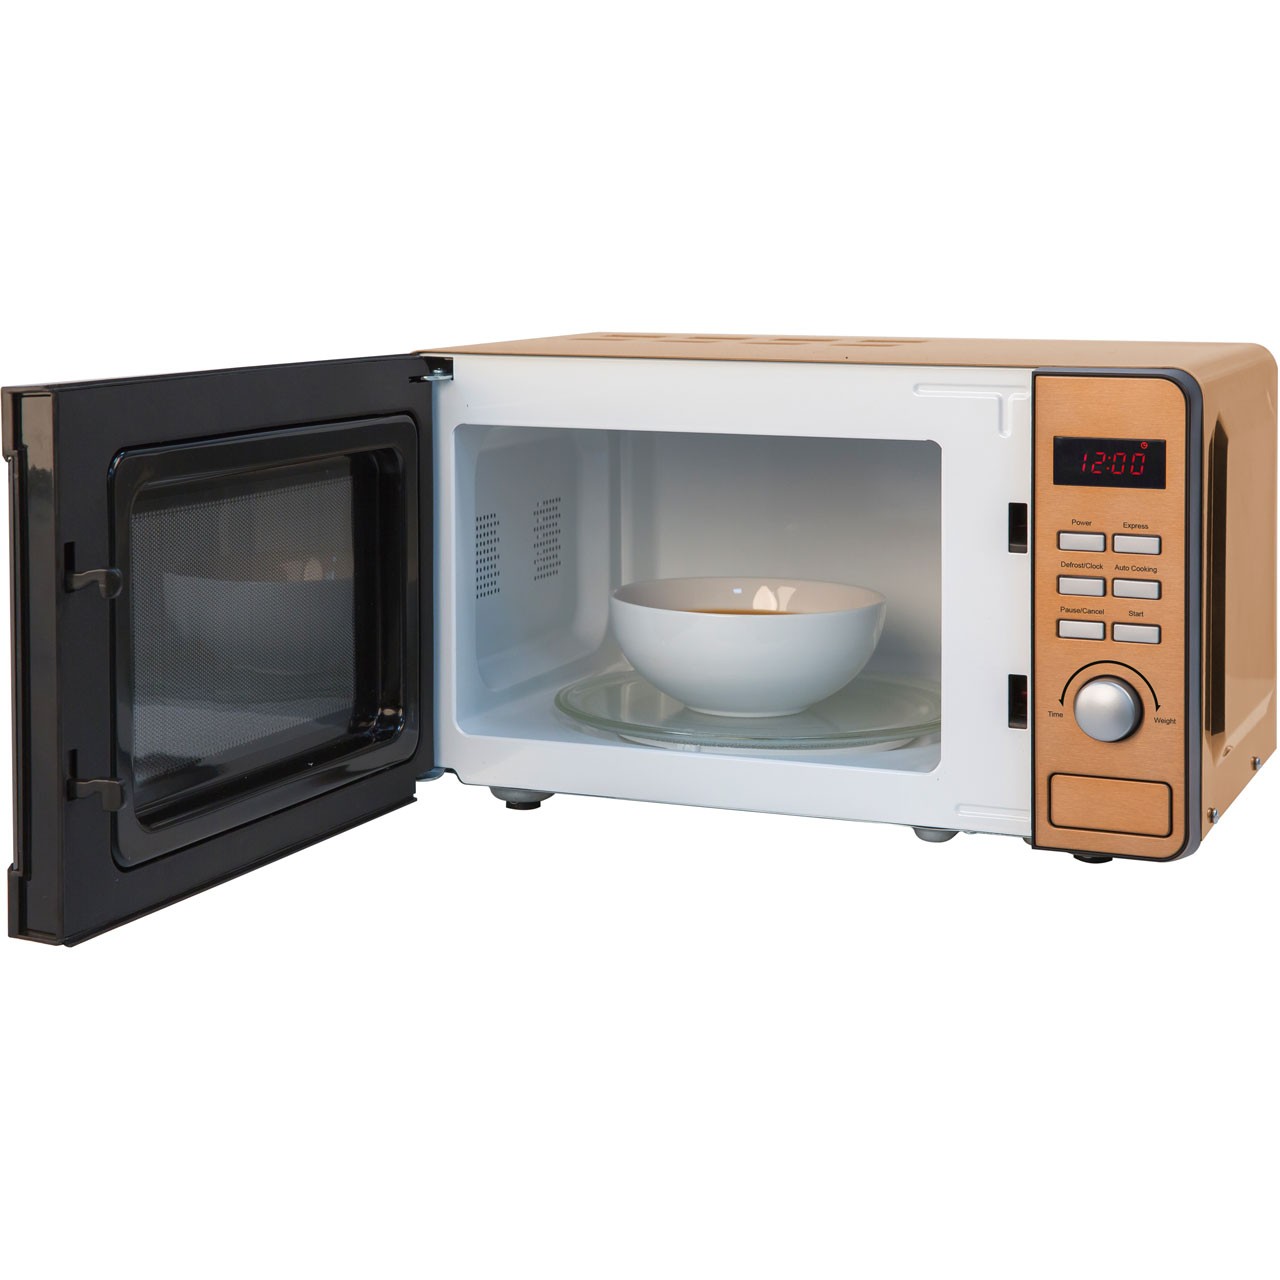 Russell hobbs microwaves rhmd804cp 800 watt microwave free